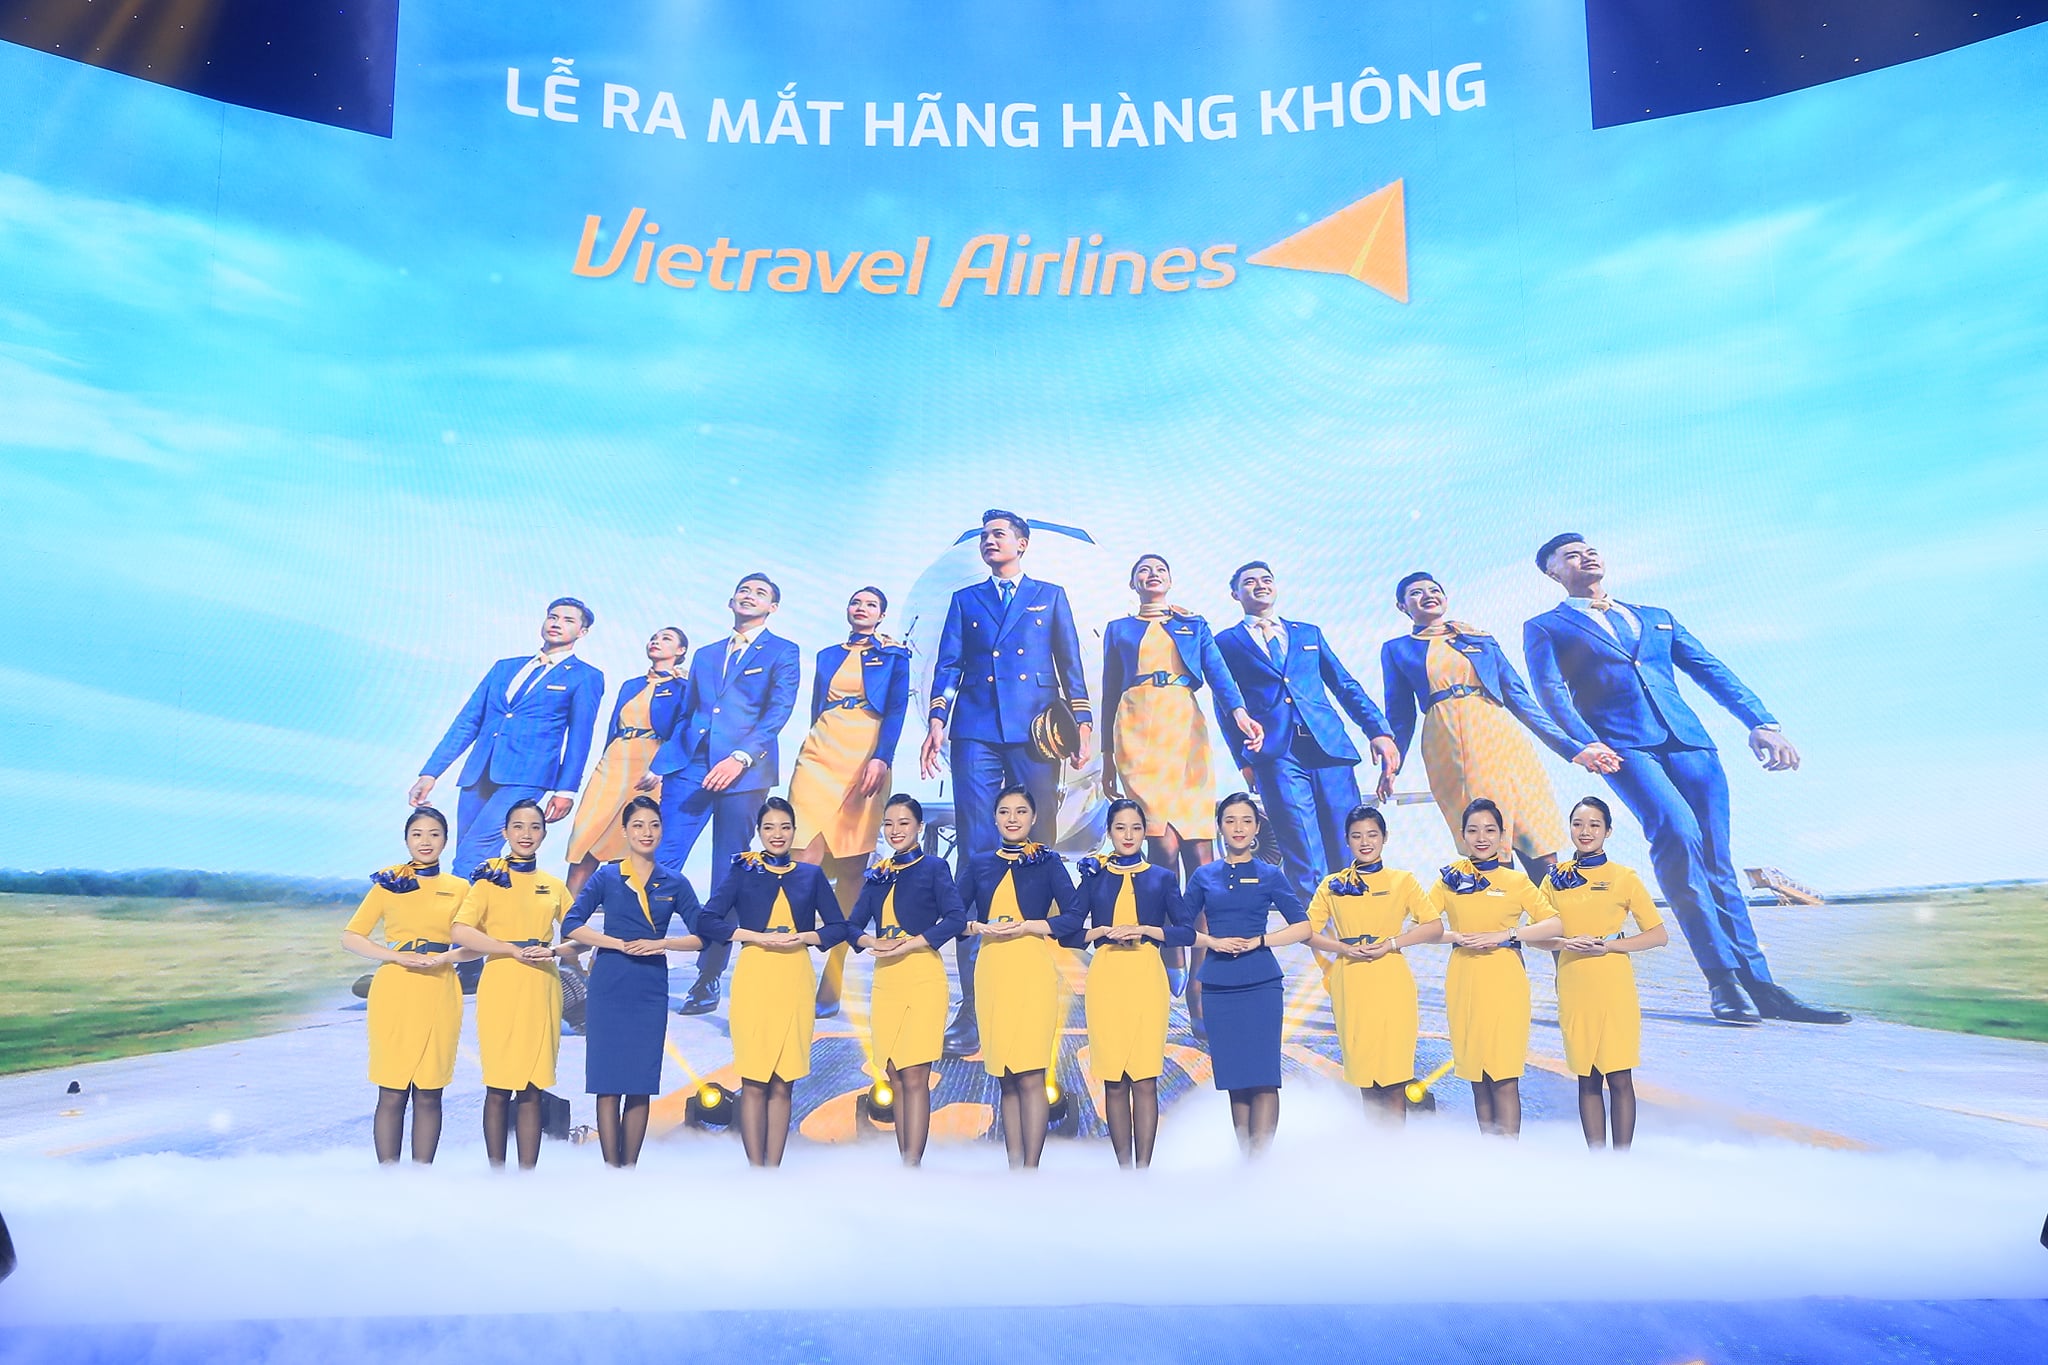 Đội ngũ tiếp viên của Vietravel Airlines và hình ảnh đồng phục với 2 tông màu xanh - vàng năng động